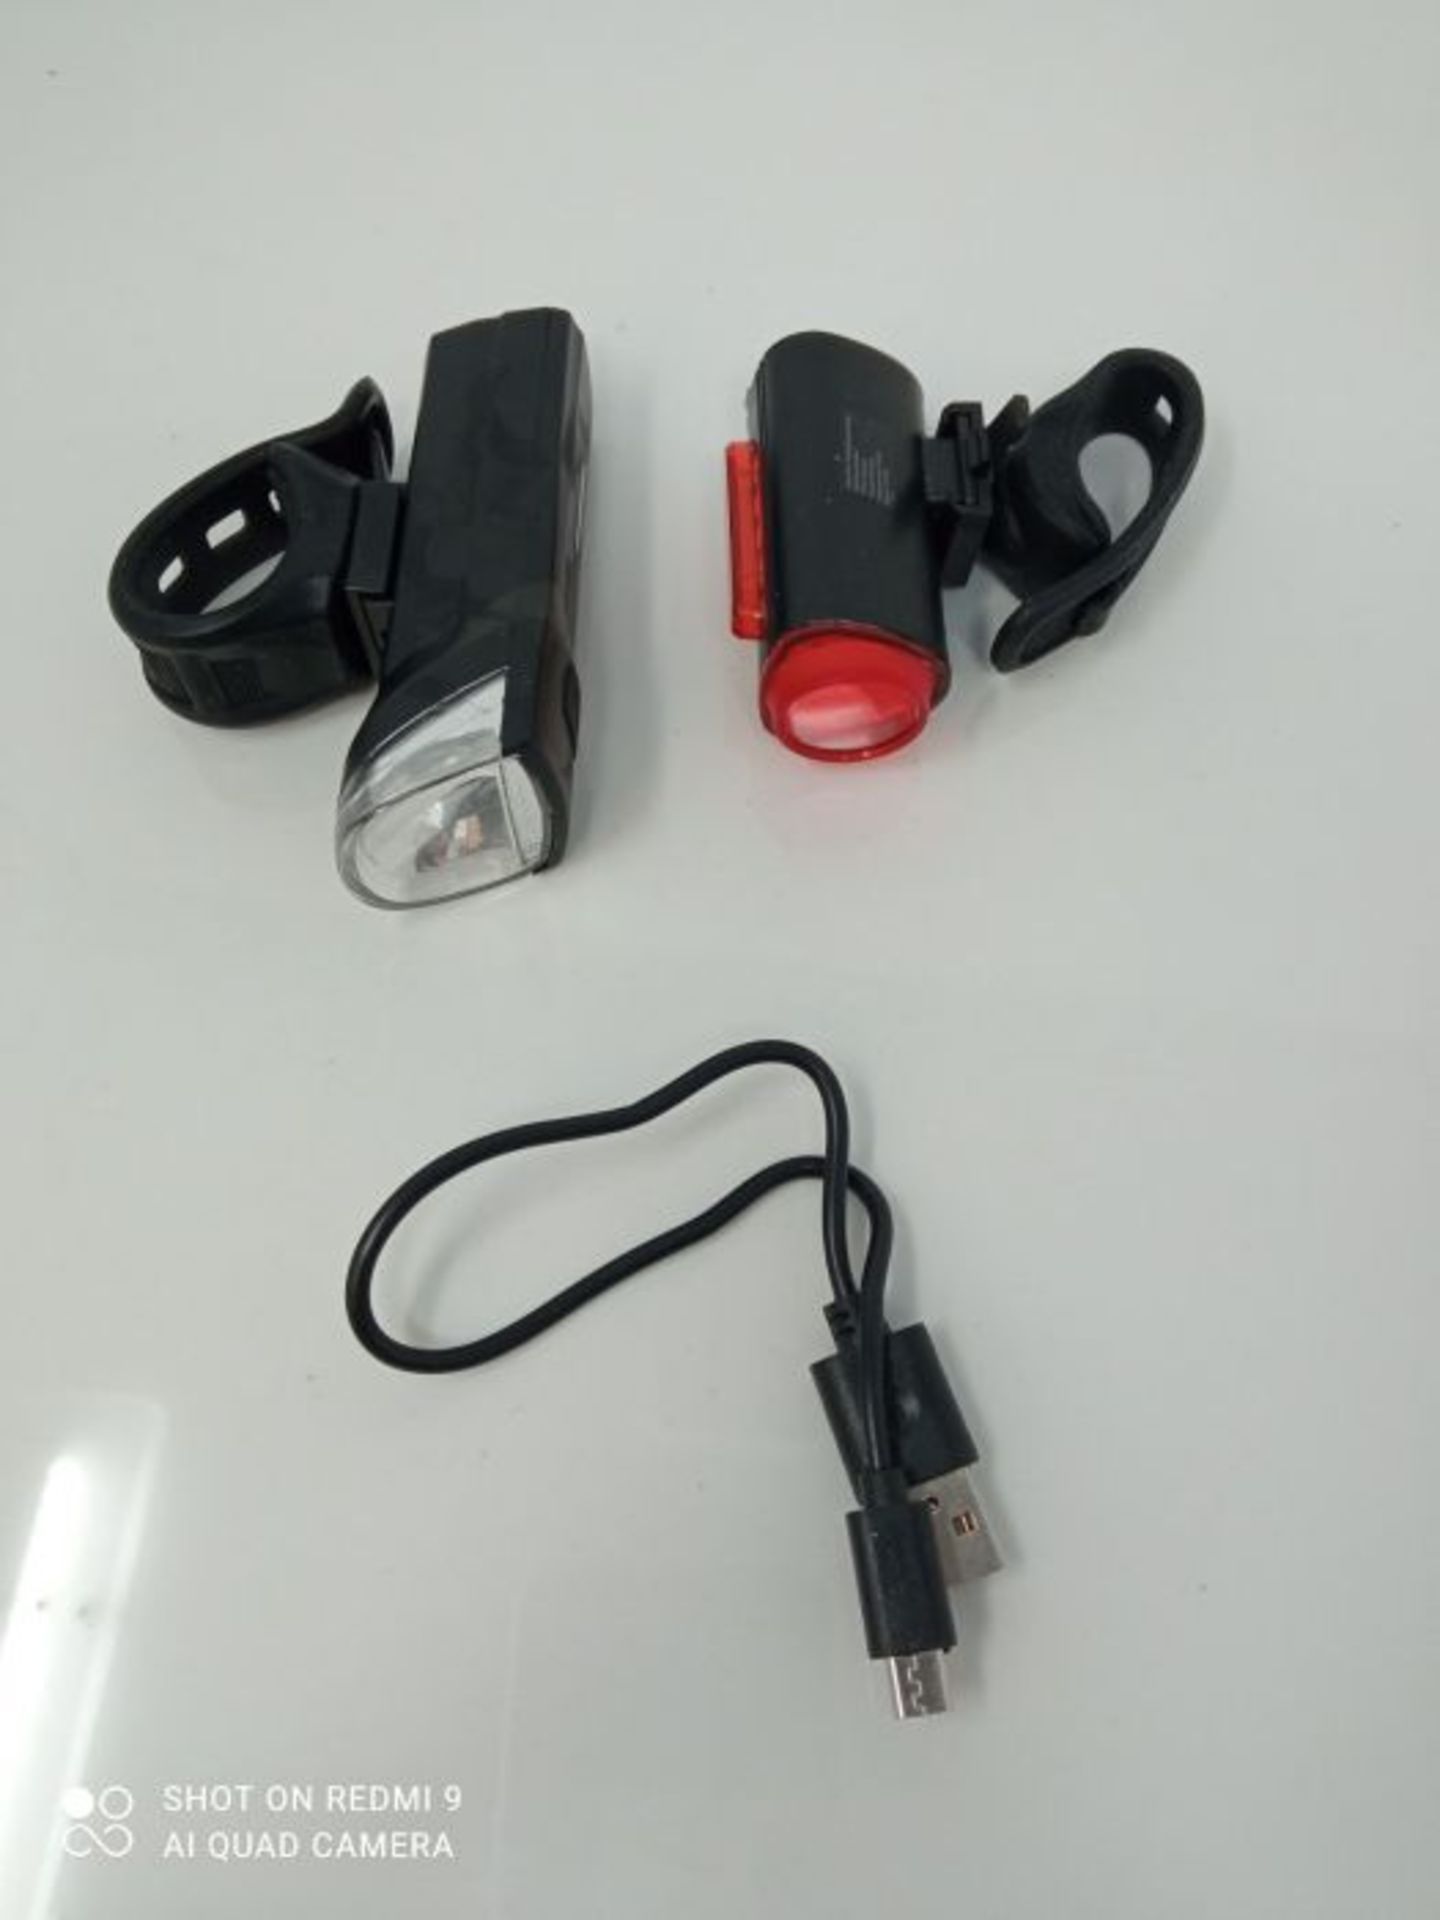 FISCHER USB Beleuchtungs-Set mit innovativer 360Â° Bodenleuchte fÃ¼r mehr Sichtbar - Image 3 of 3